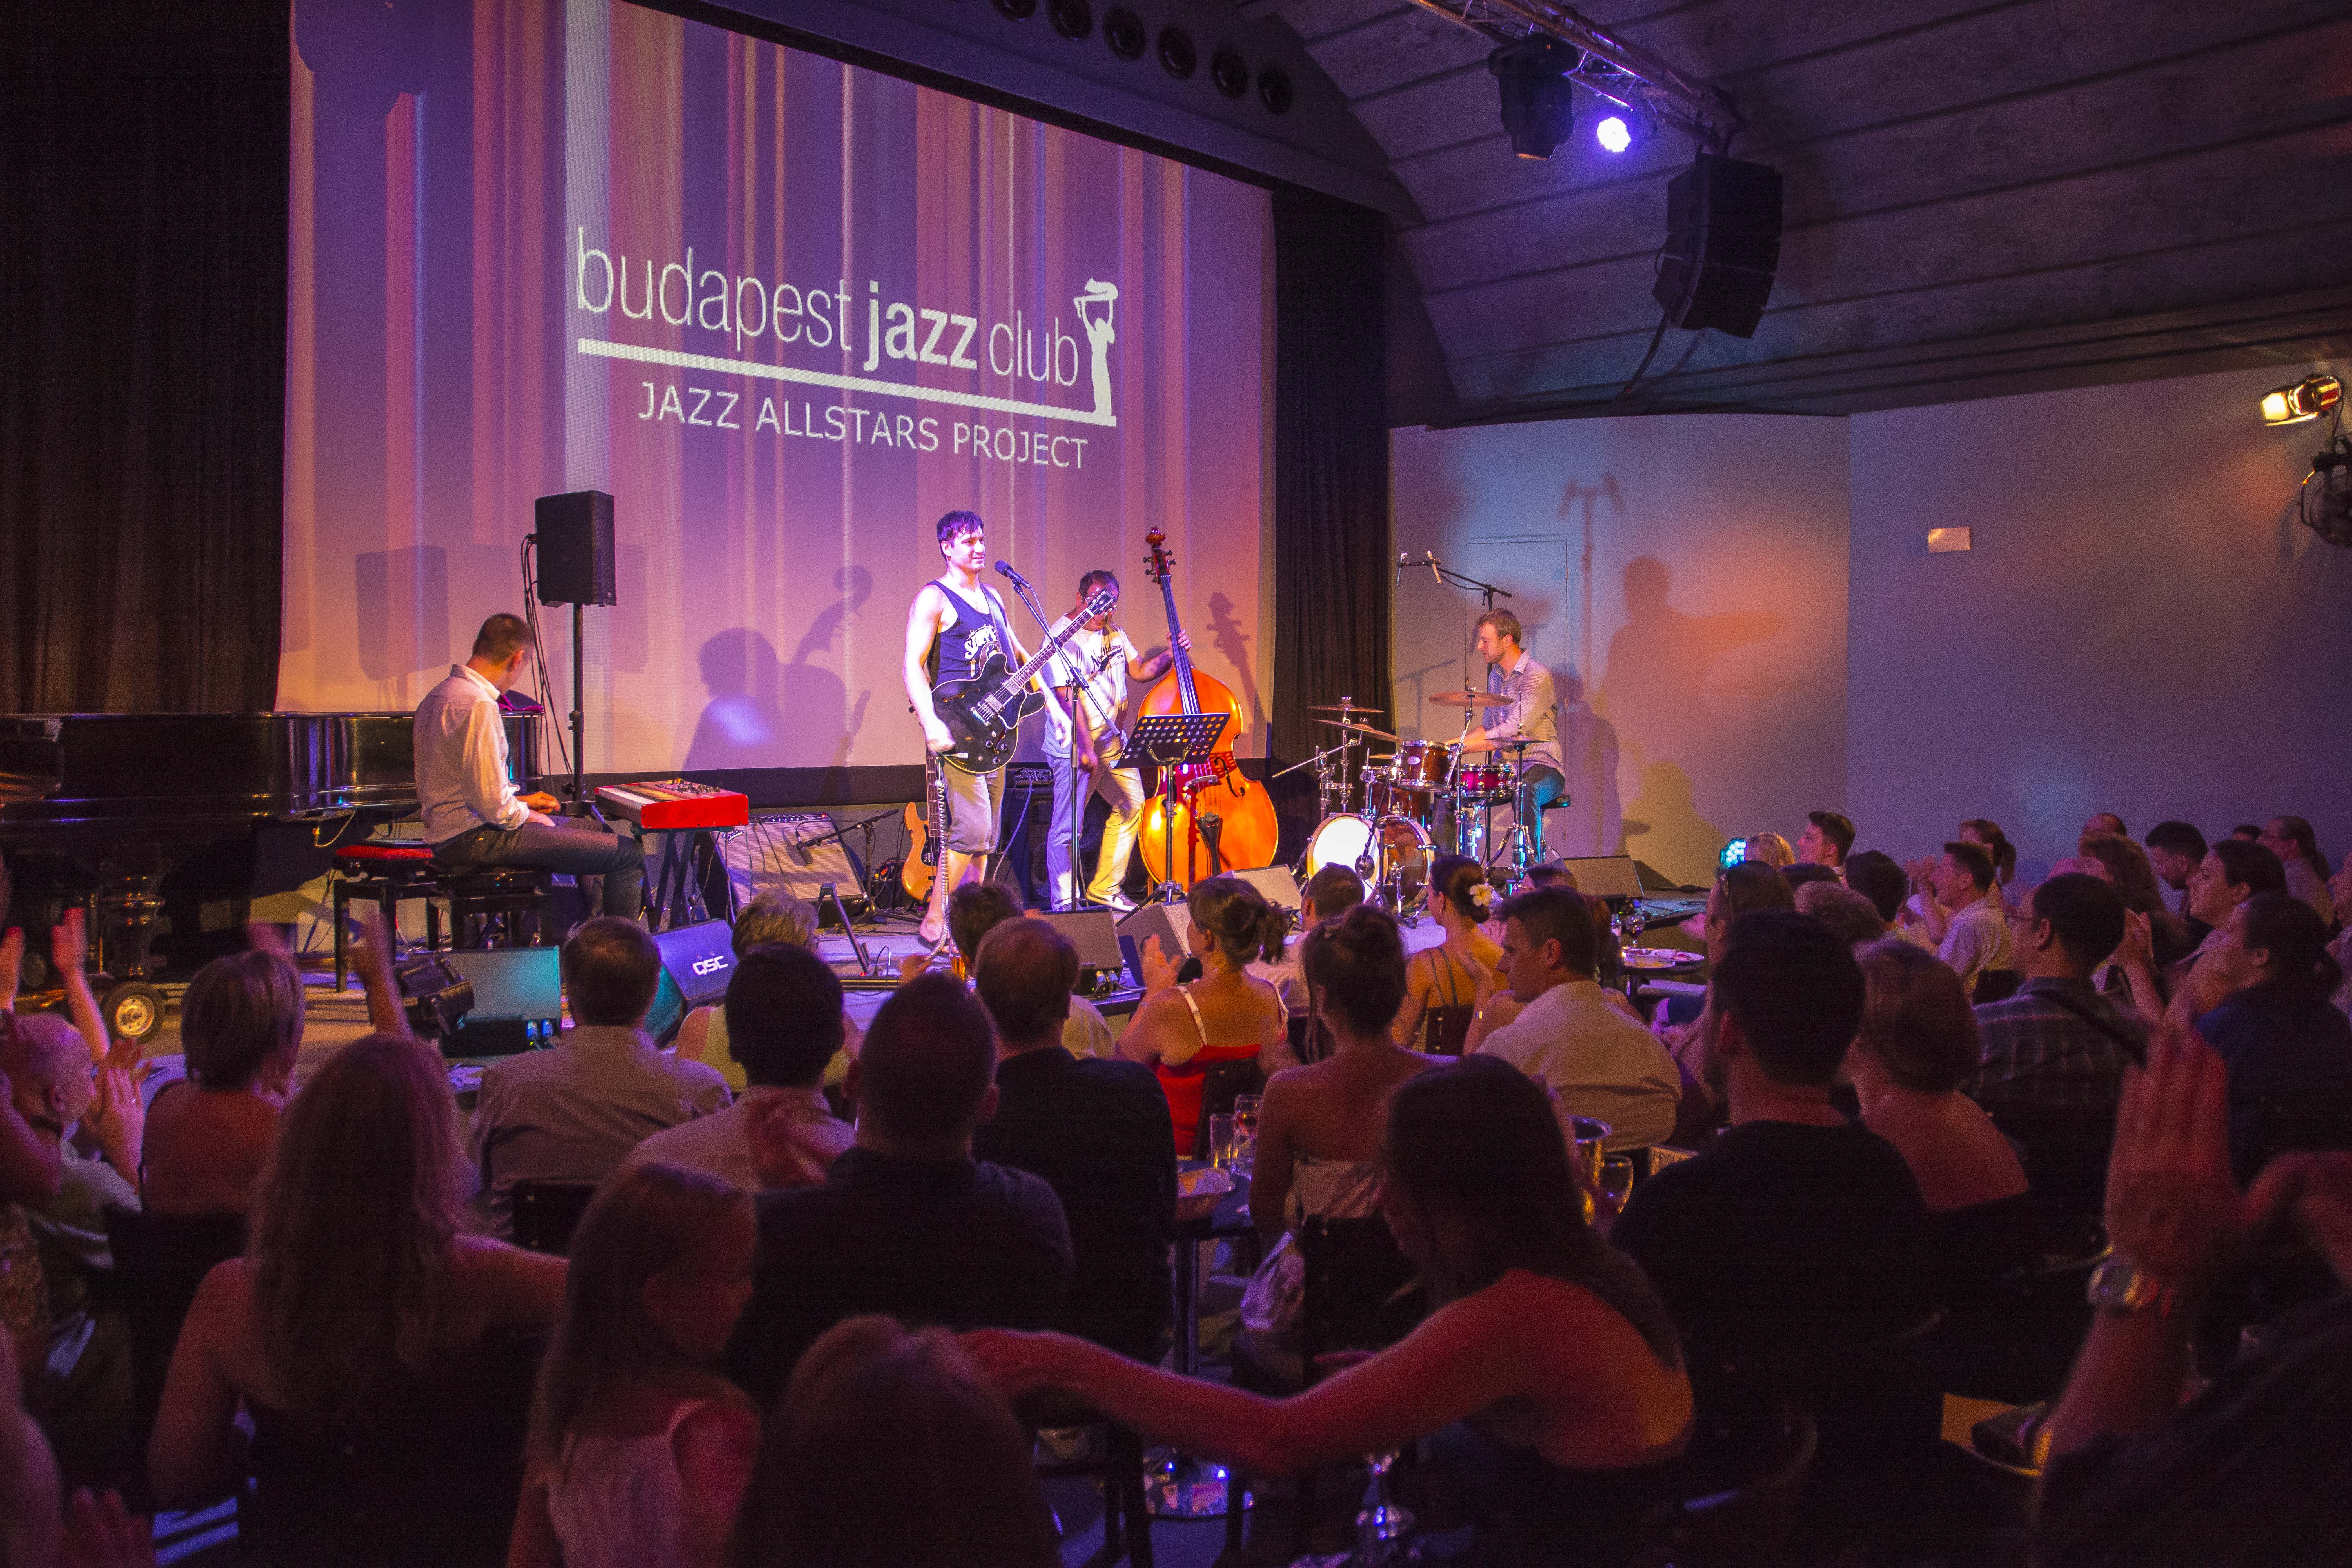 Mégis megmenekülhet a Budapest Jazz Club